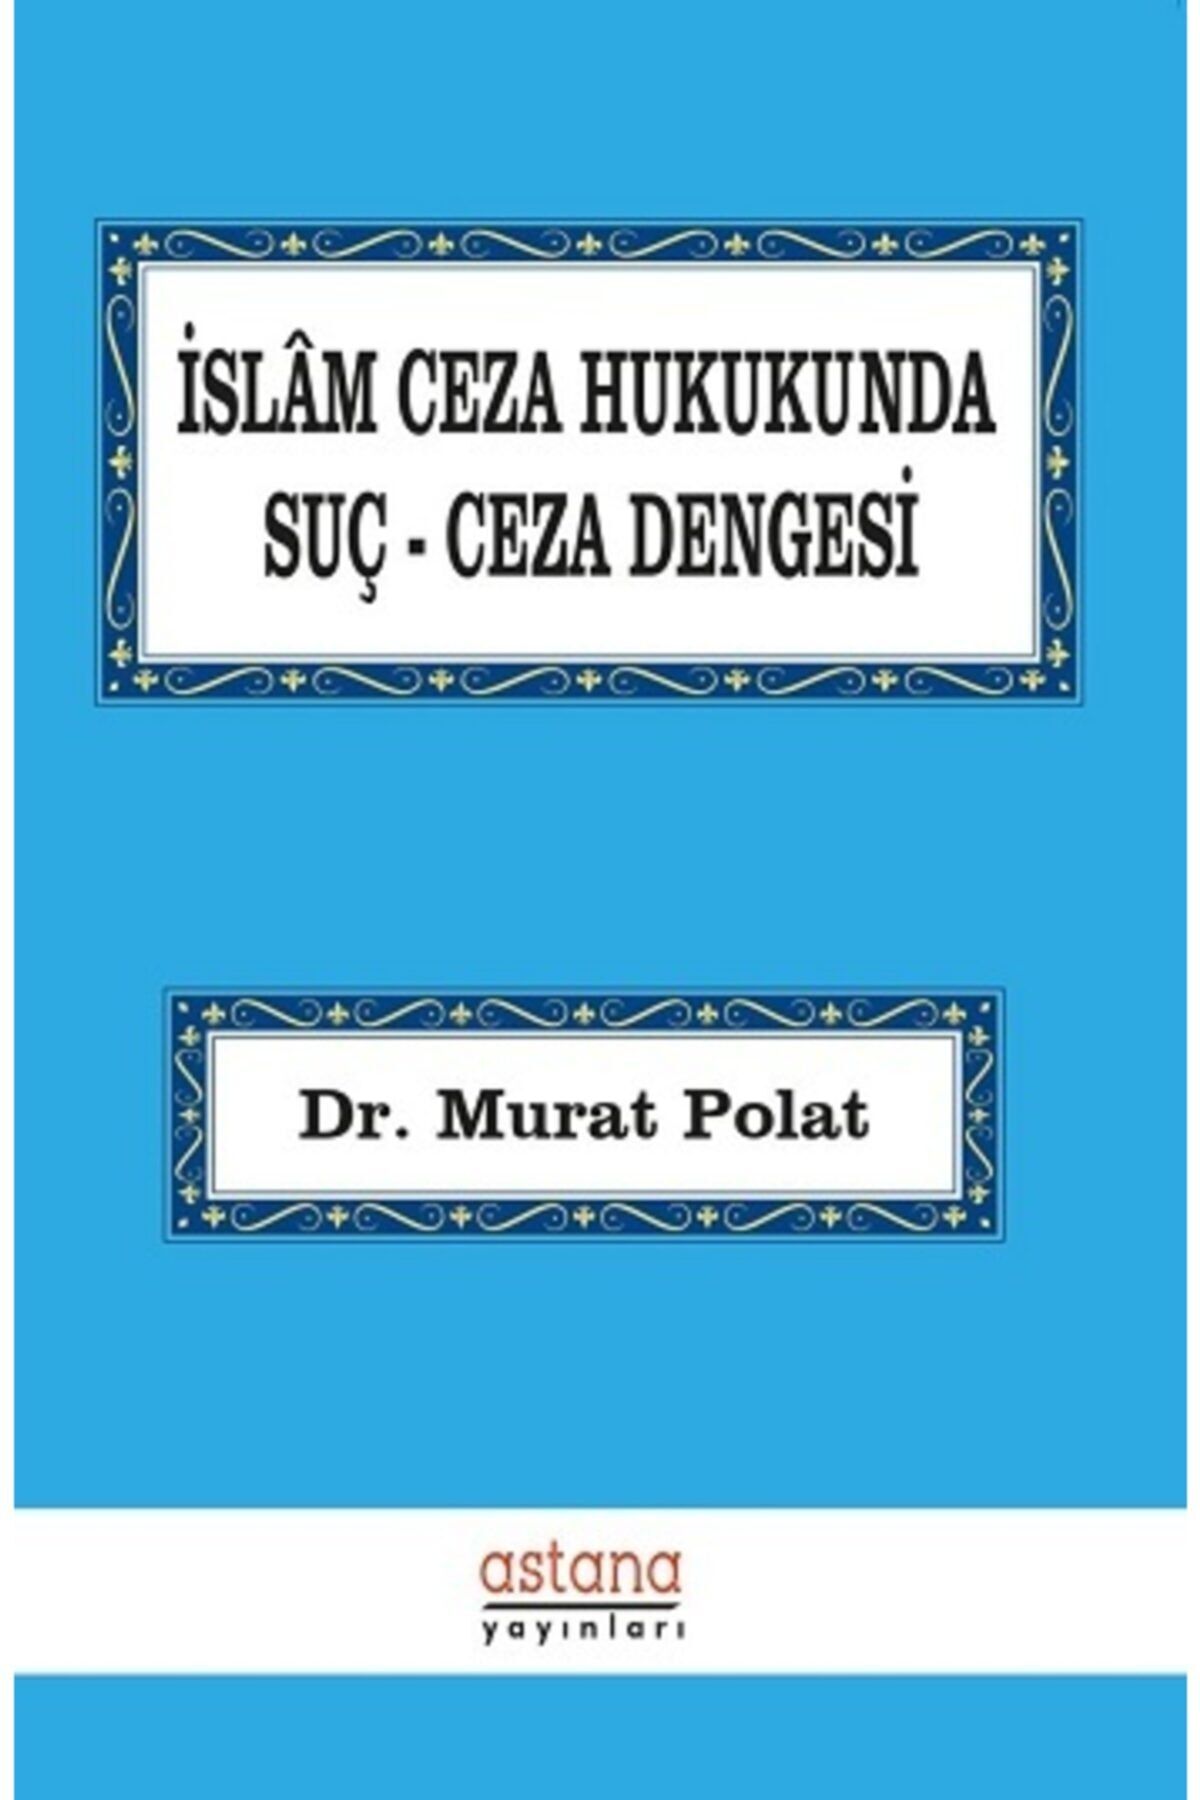 Astana Yayınları Islam Ceza Hukukunda Suç Ceza Dengesi - Murat Polat